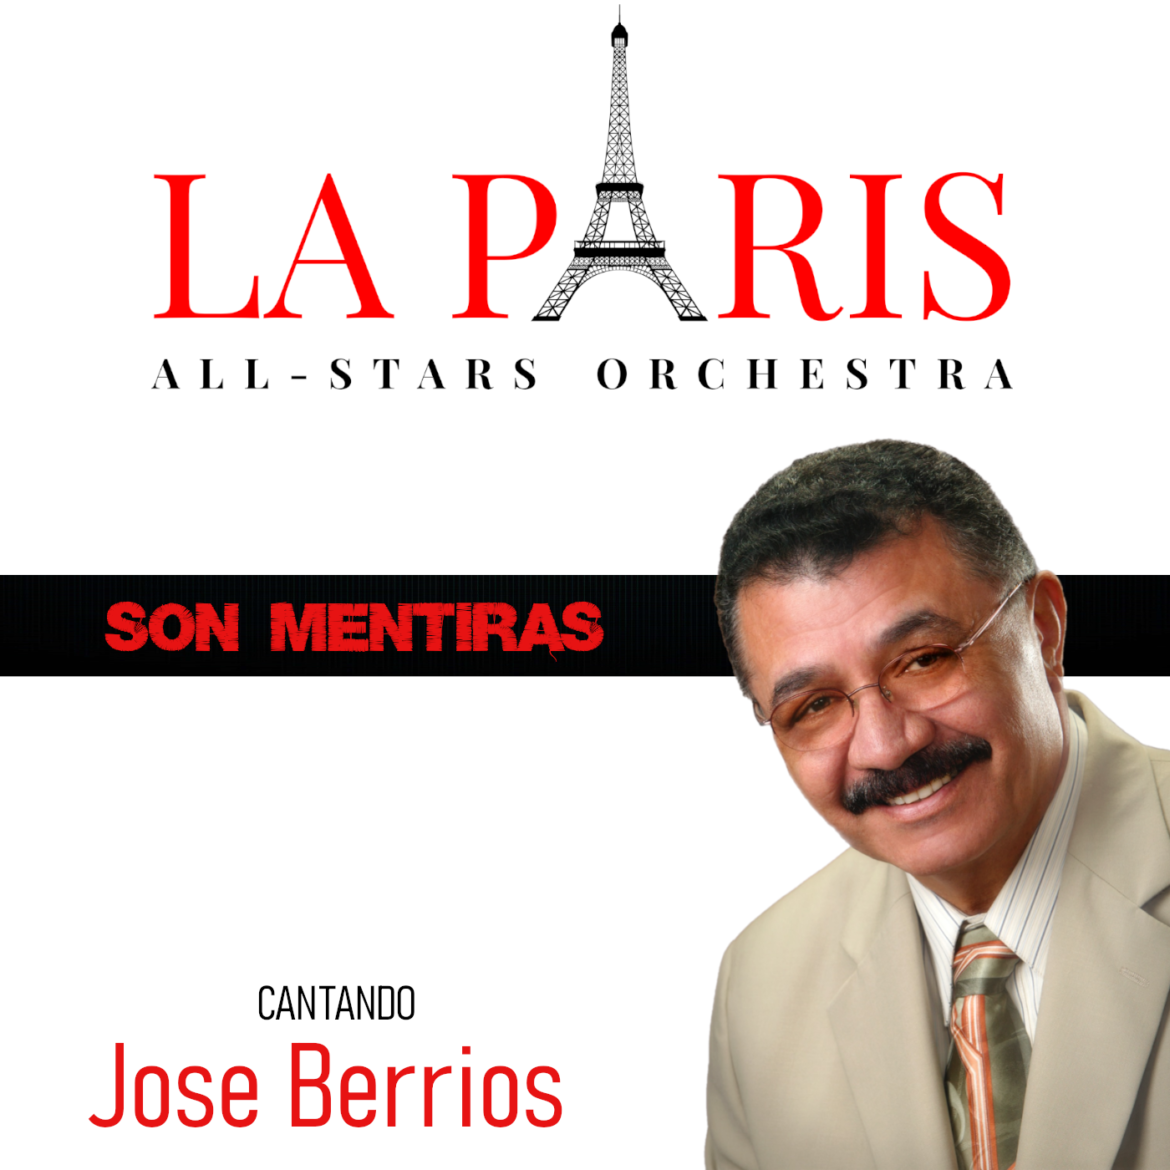 La Paris All Star Orchestra estrena “Son Mentiras” su nuevo sencillo con José Berrios